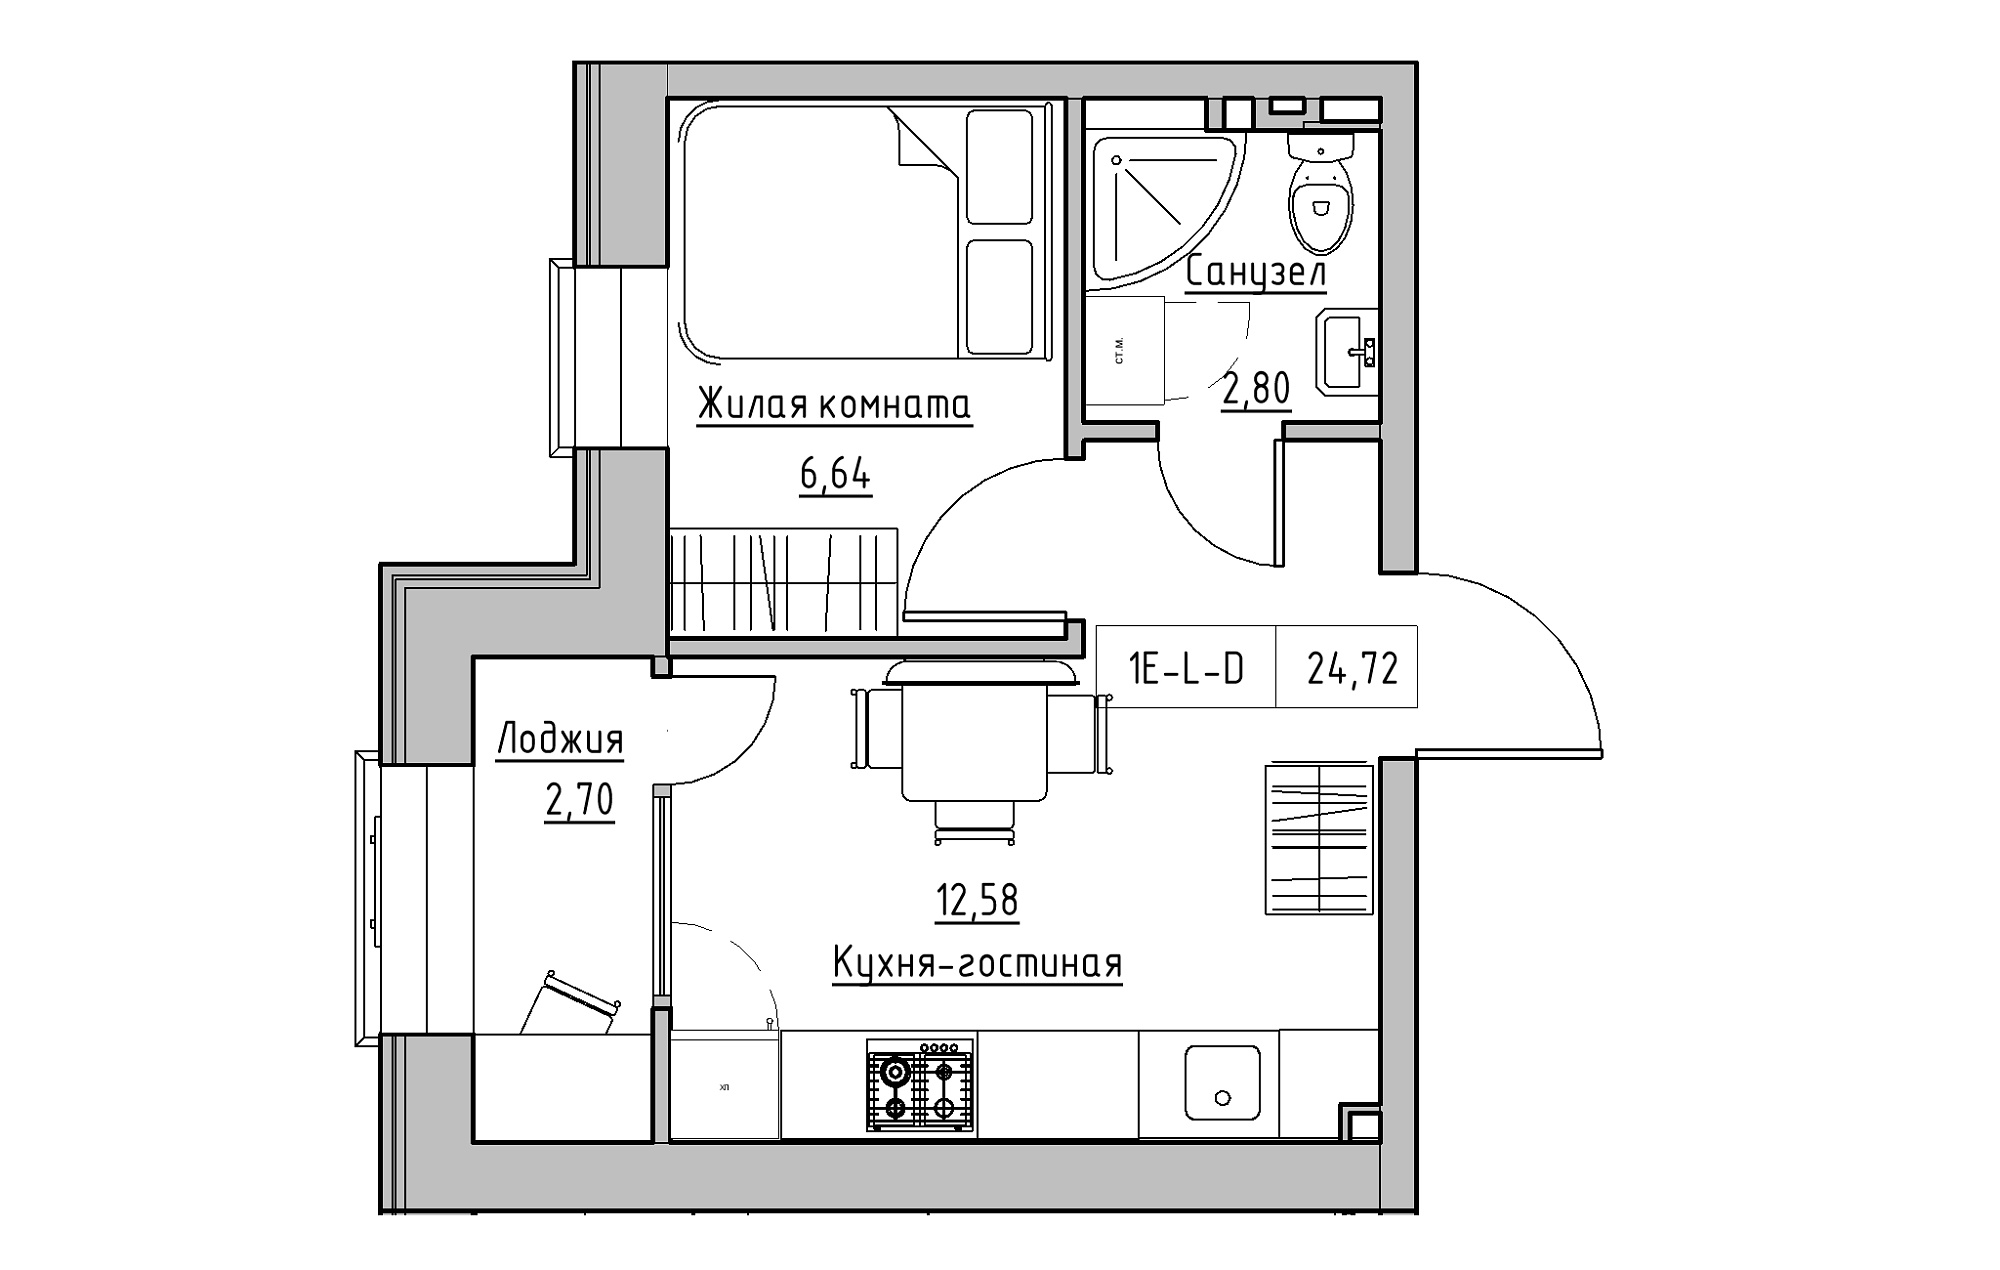 Планування 1-к квартира площею 24.72м2, KS-018-03/0013.